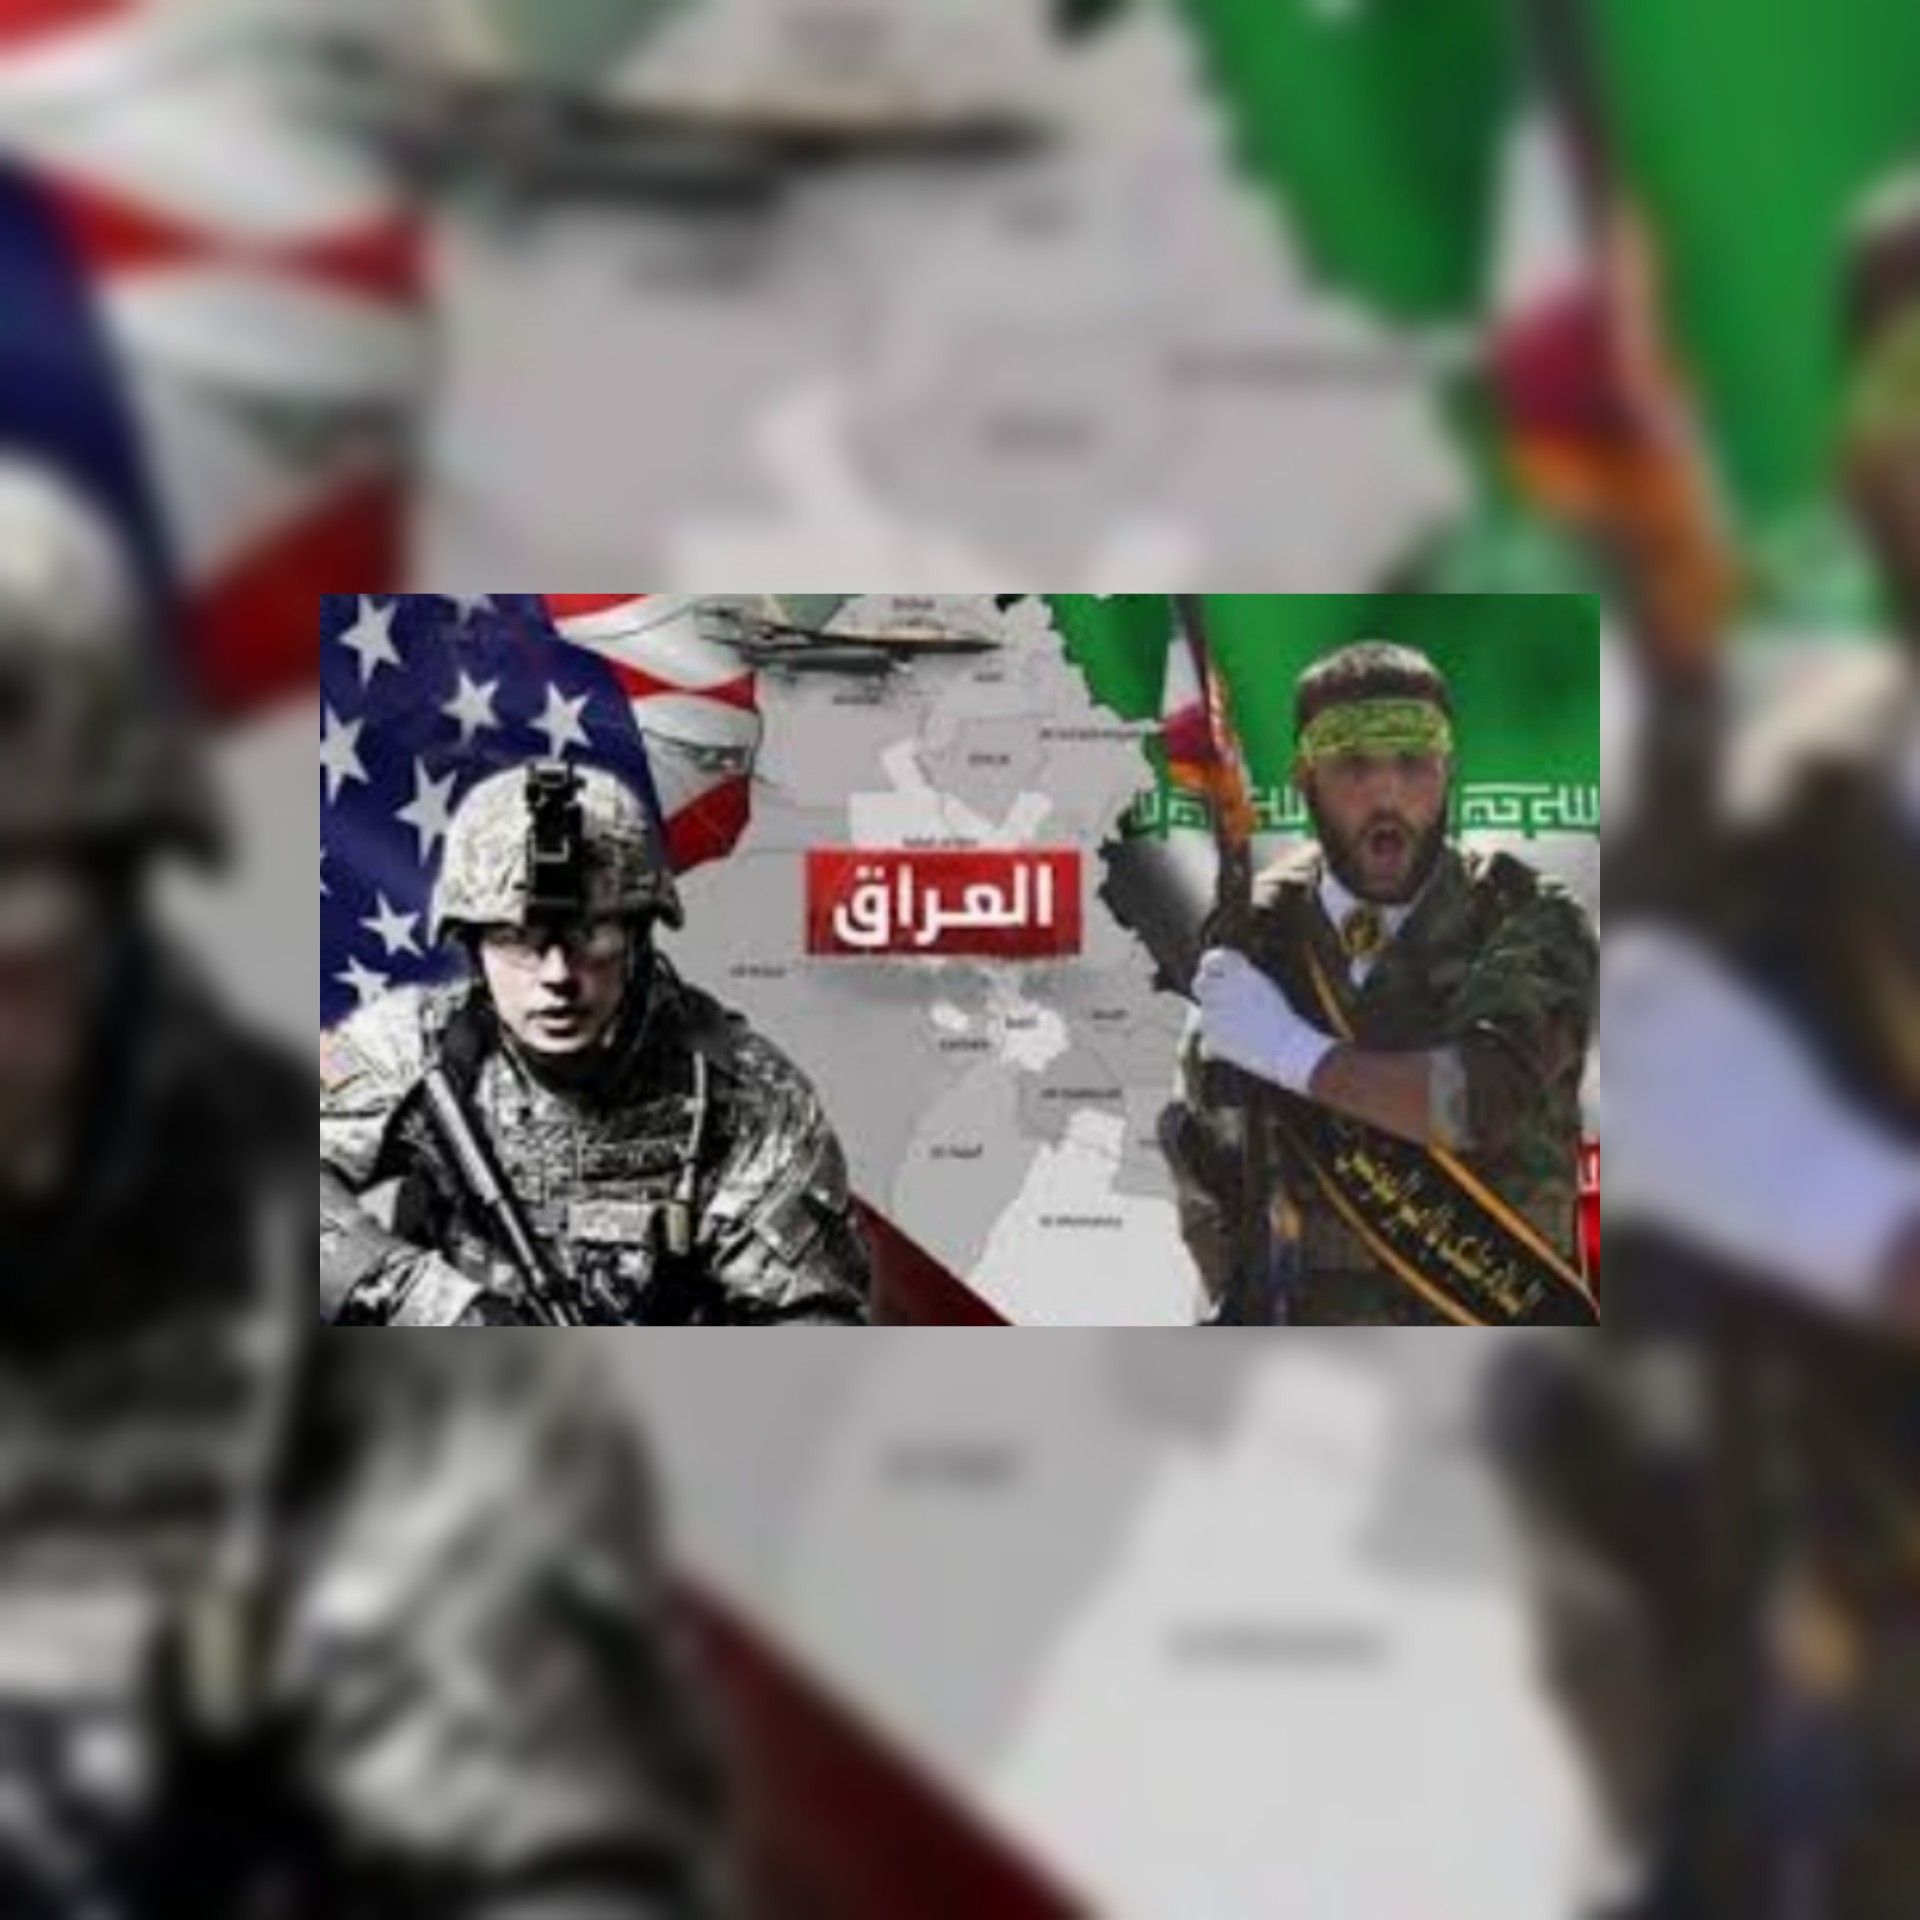 توصيات معهد واشنطن الصهيوأمريكي : ردع المليشيات في العراق ما الذي ينجح وما  لا ينجح / مايكل نايتس